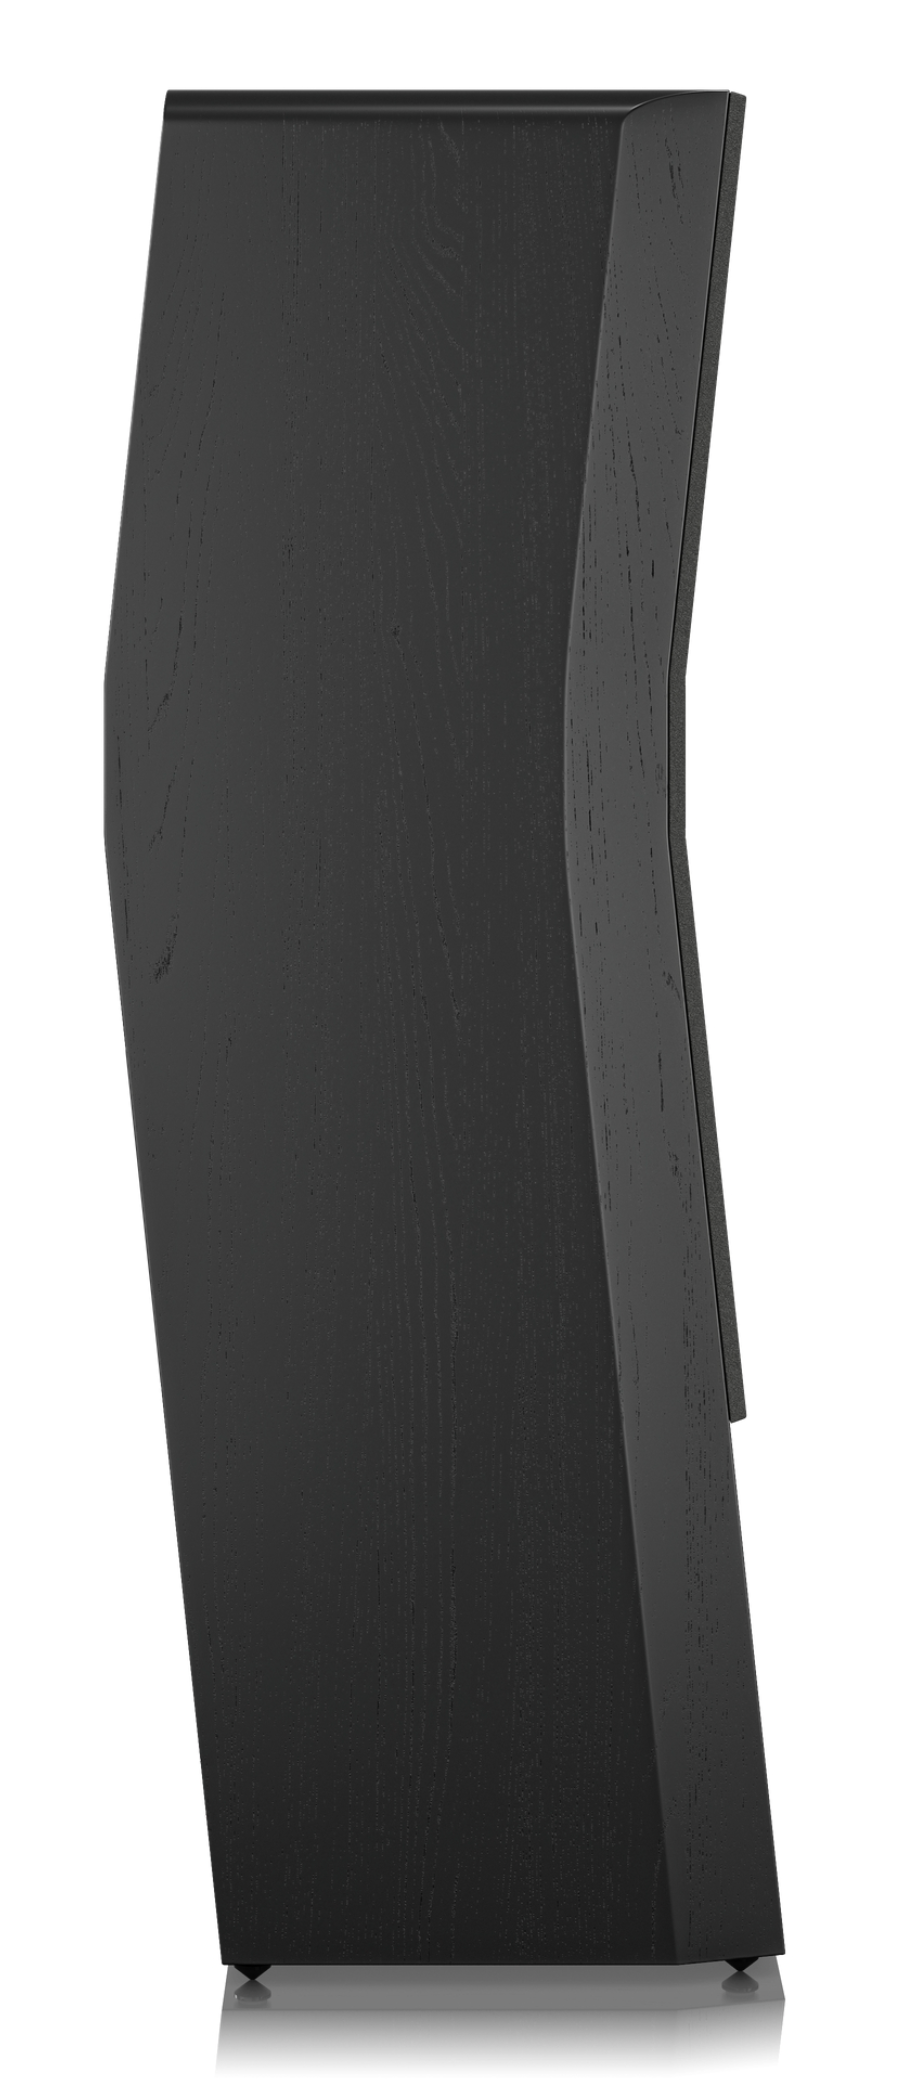 SVS Ultra Evolution Pinnacle Floorstanding Speaker, in Black Oak, individual profile